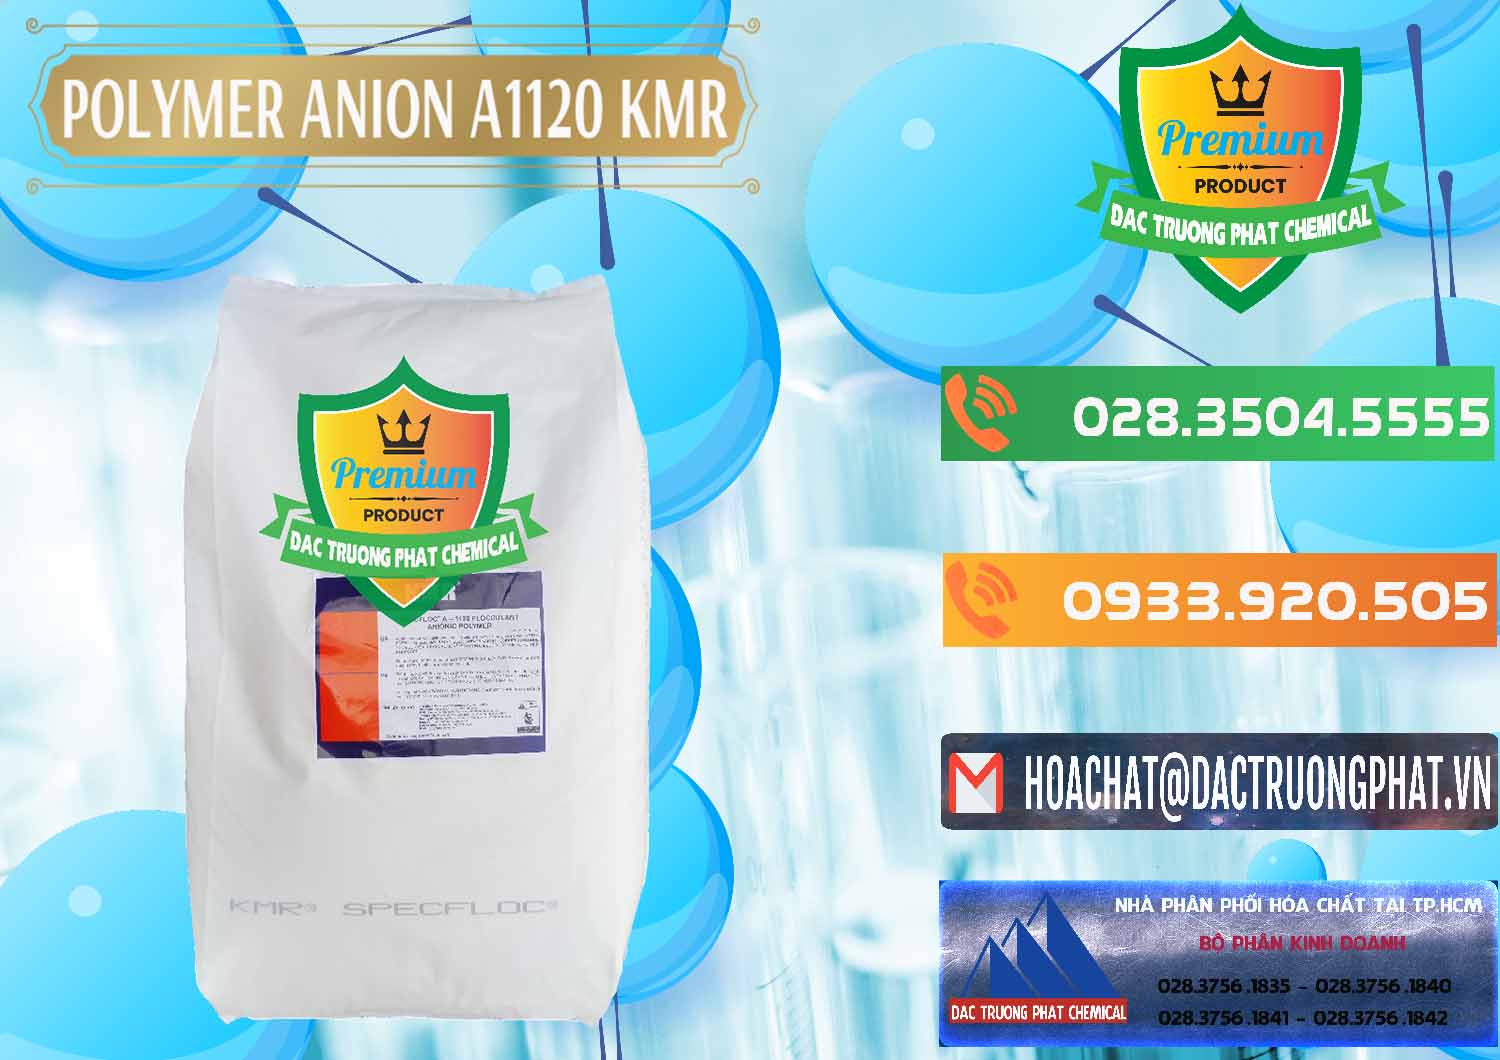 Nơi chuyên kinh doanh & bán Polymer Anion A1120 - KMR Anh Quốc England - 0119 - Cty cung cấp _ phân phối hóa chất tại TP.HCM - hoachatxulynuoc.com.vn